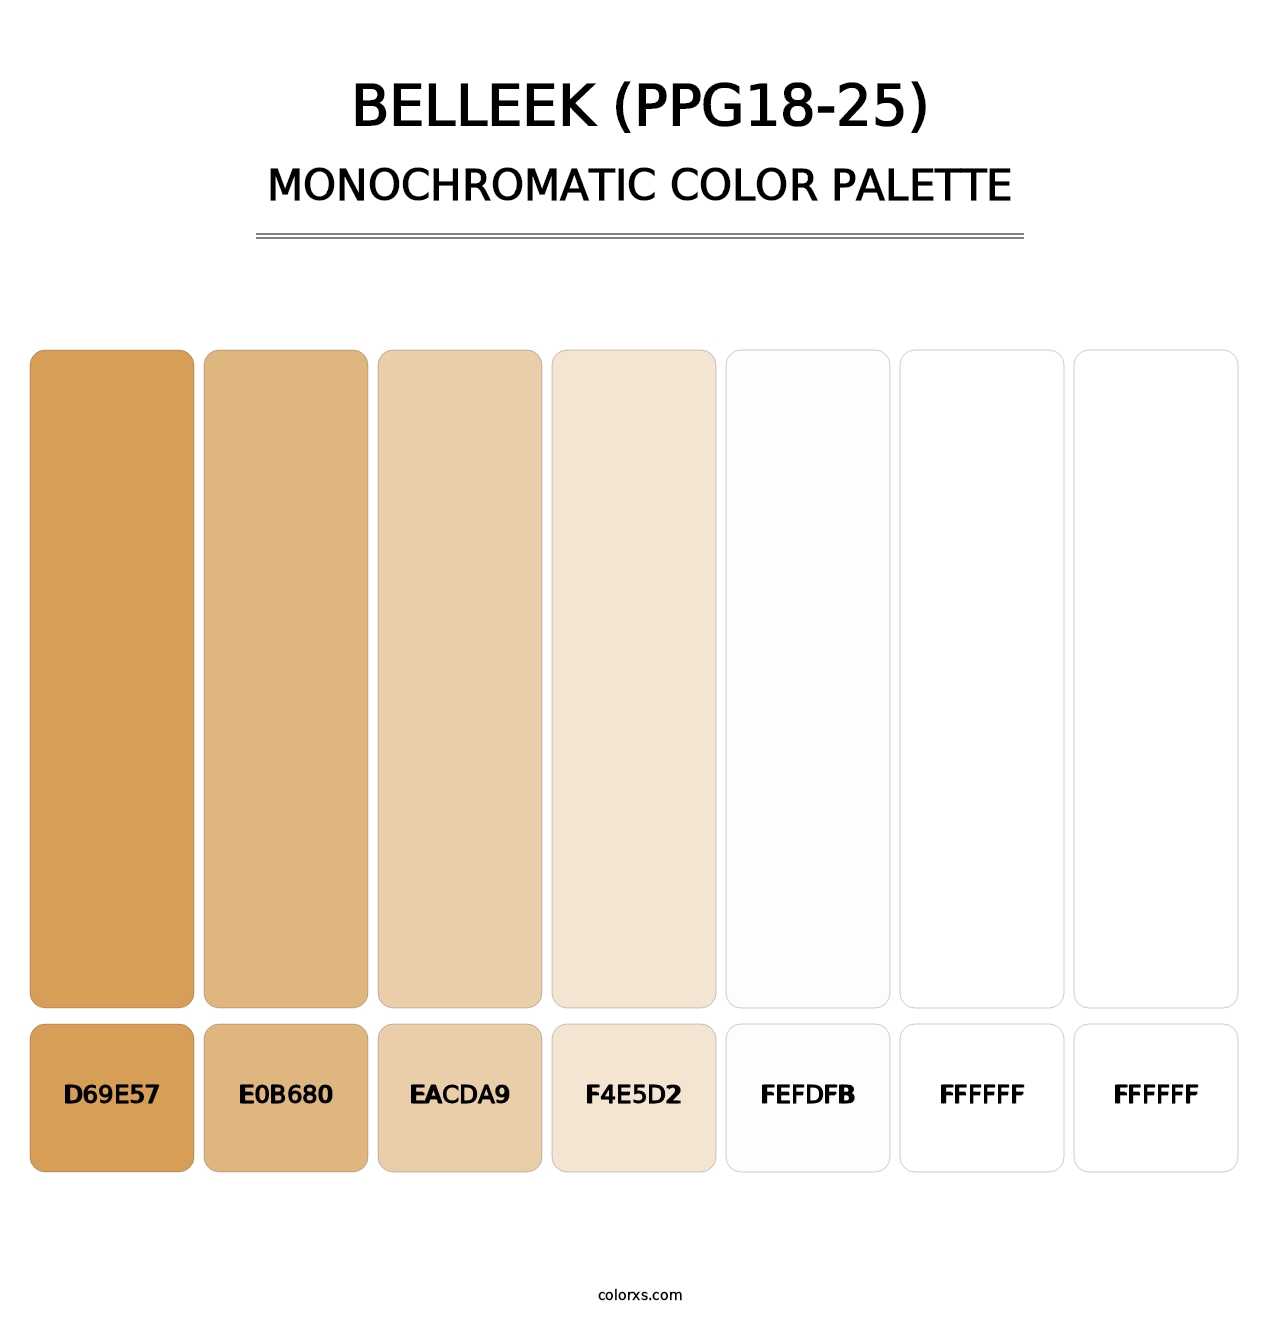 Belleek (PPG18-25) - Monochromatic Color Palette